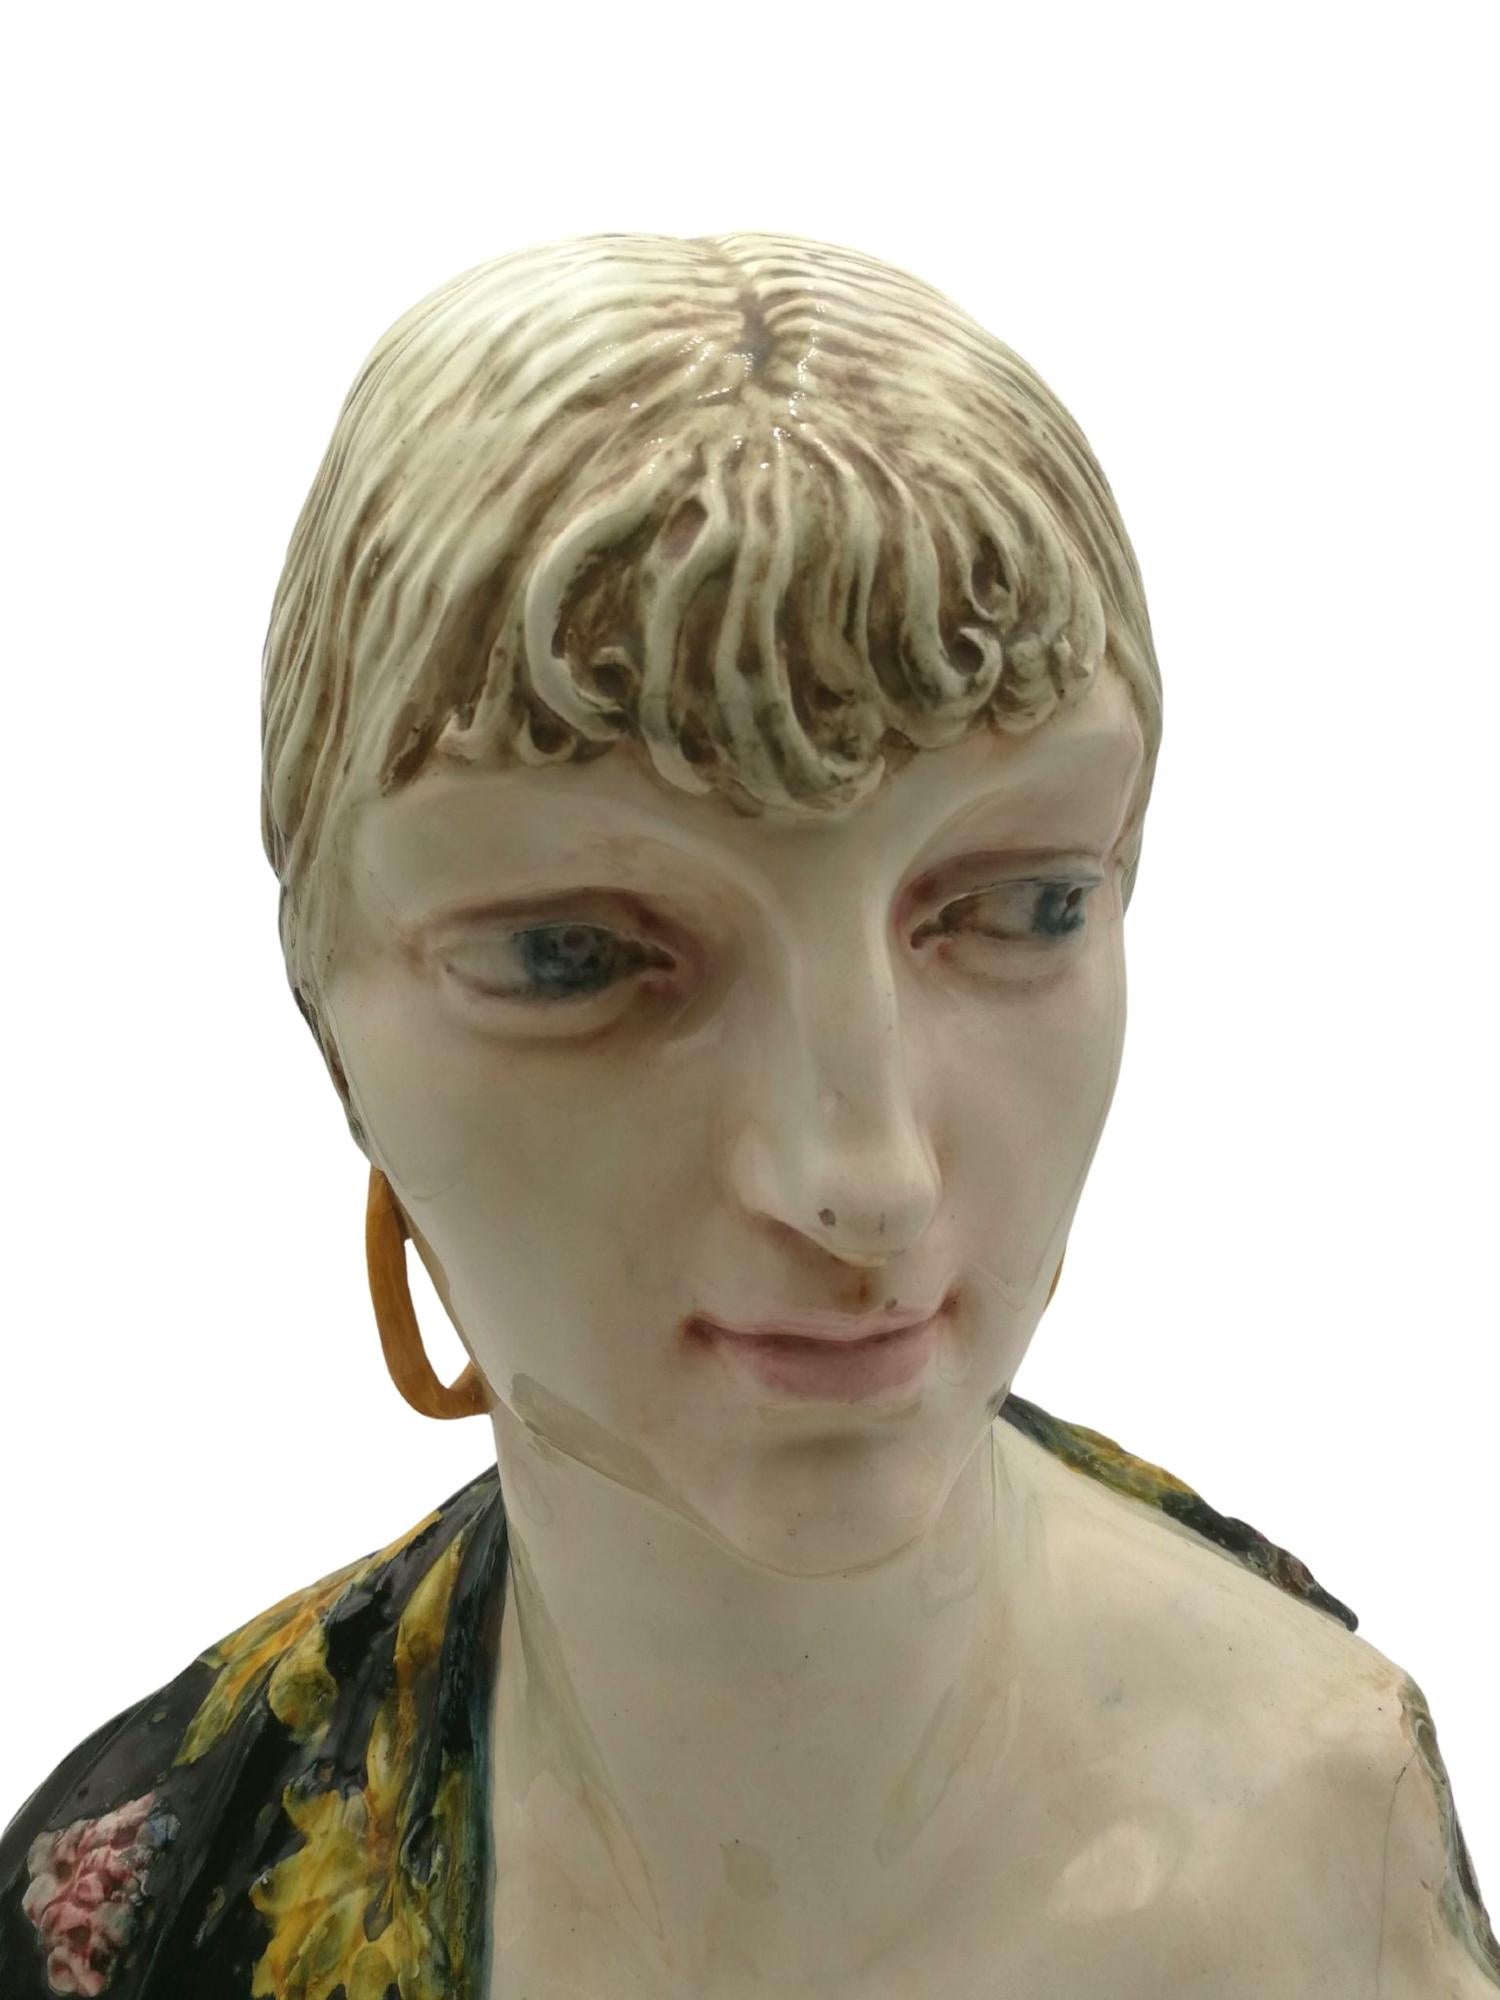 Superbe et séduisant buste de femme de style Art nouveau en argile blanche polychromée et émaillée. Ce buste singulier d'une femme aux traits de visage uniques pourrait être celui d'une femme italienne, peut-être de Sicile, ou même d'une gitane